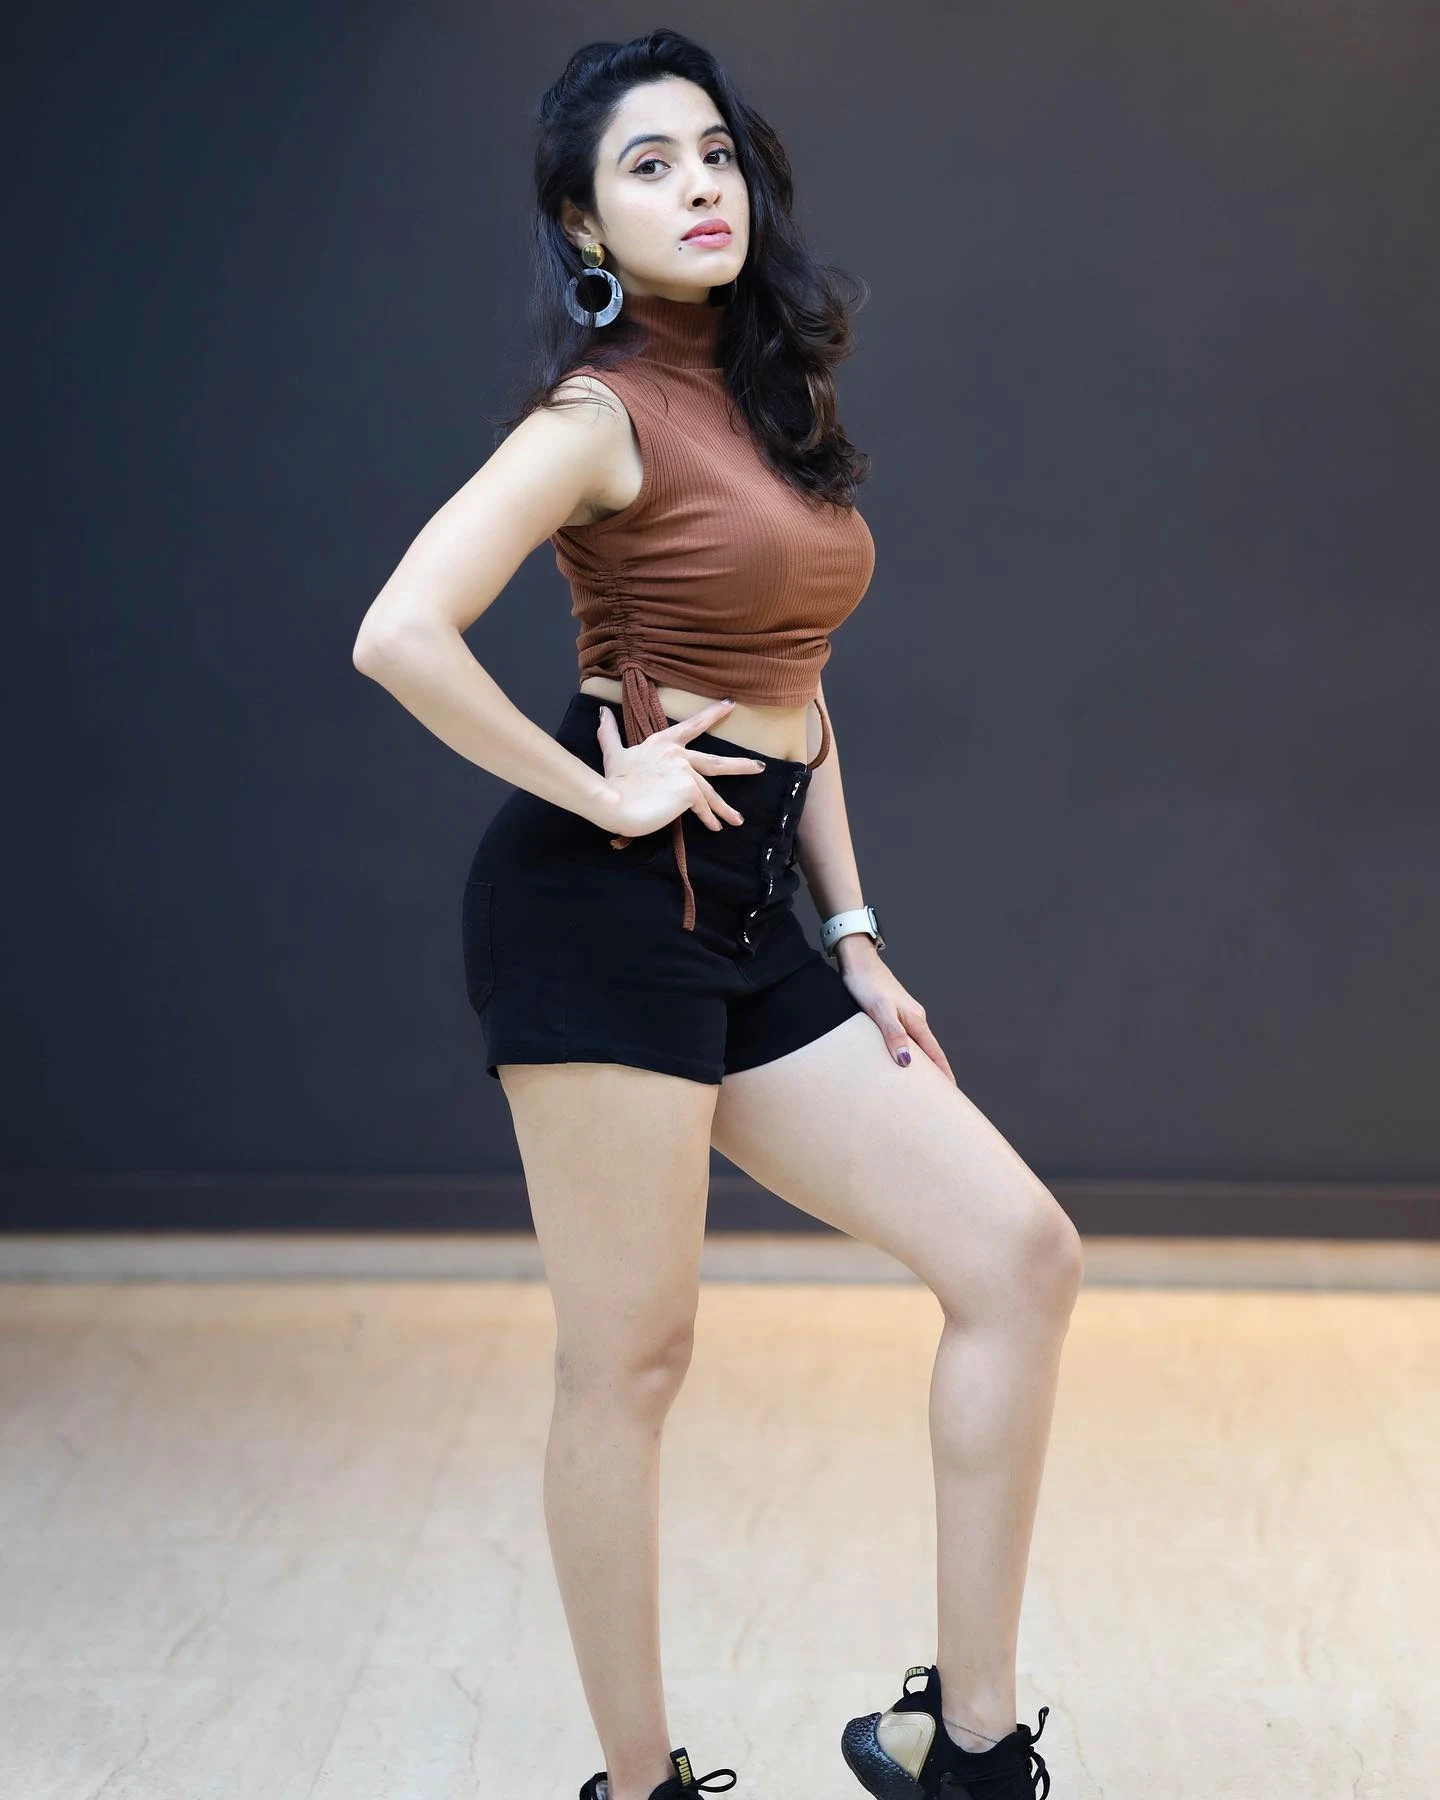 Priyanka kholgade hot and sexy thighs and Butt | Priyanka kholgade hot and gorgeous looks